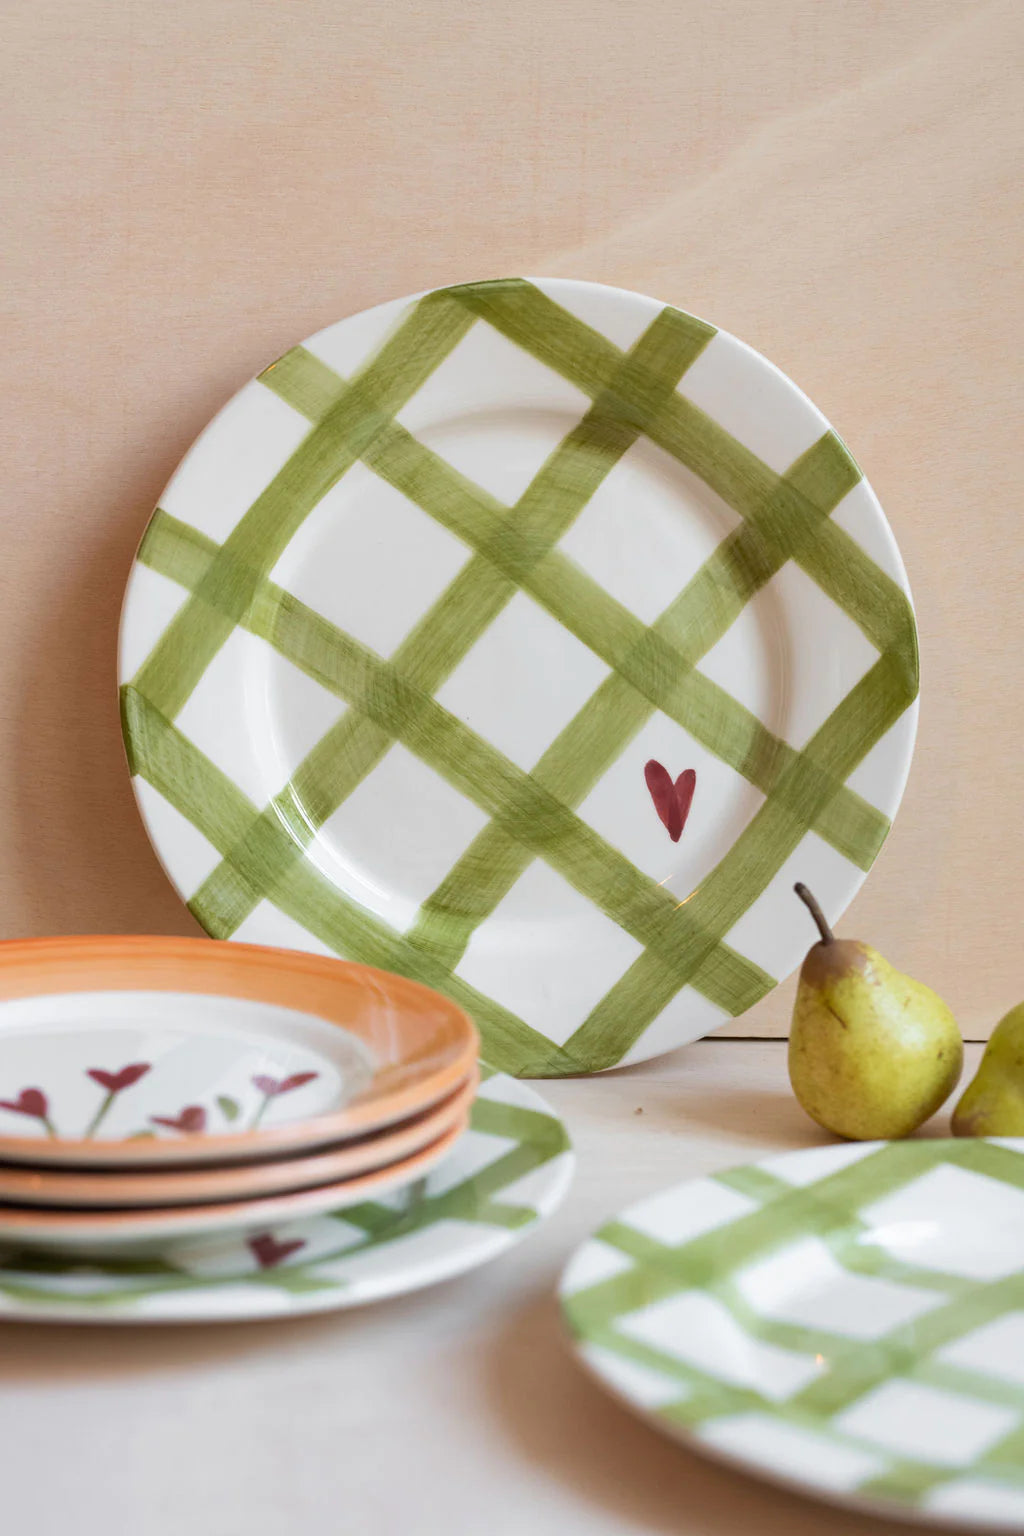 Picnic Ceramic Dinner Plate | Valsa Home